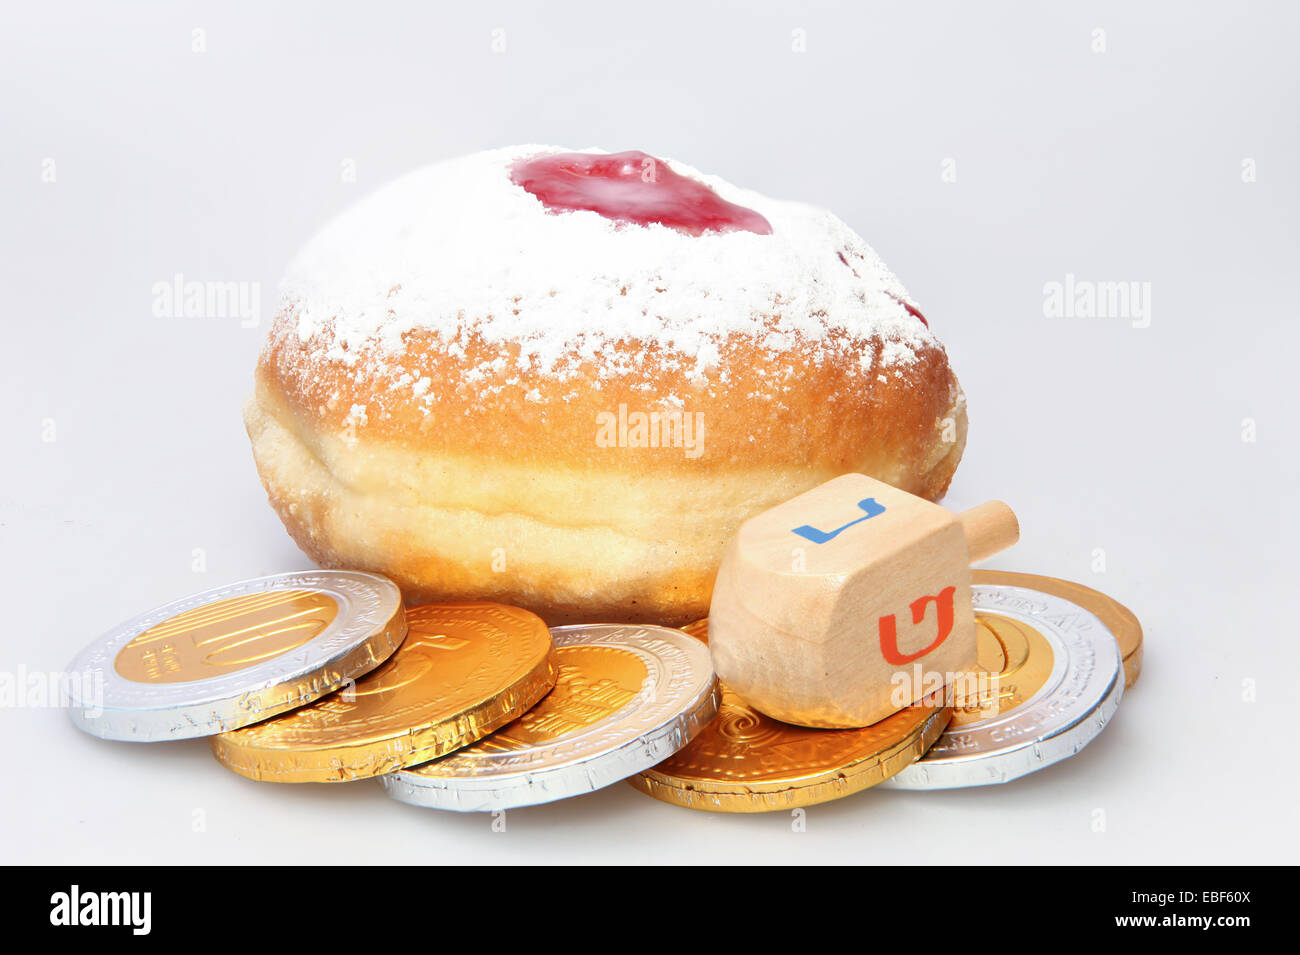 Donut y Hanukkah trompo - Tradicional fiesta judía de alimentos y juguetes. Foto de stock